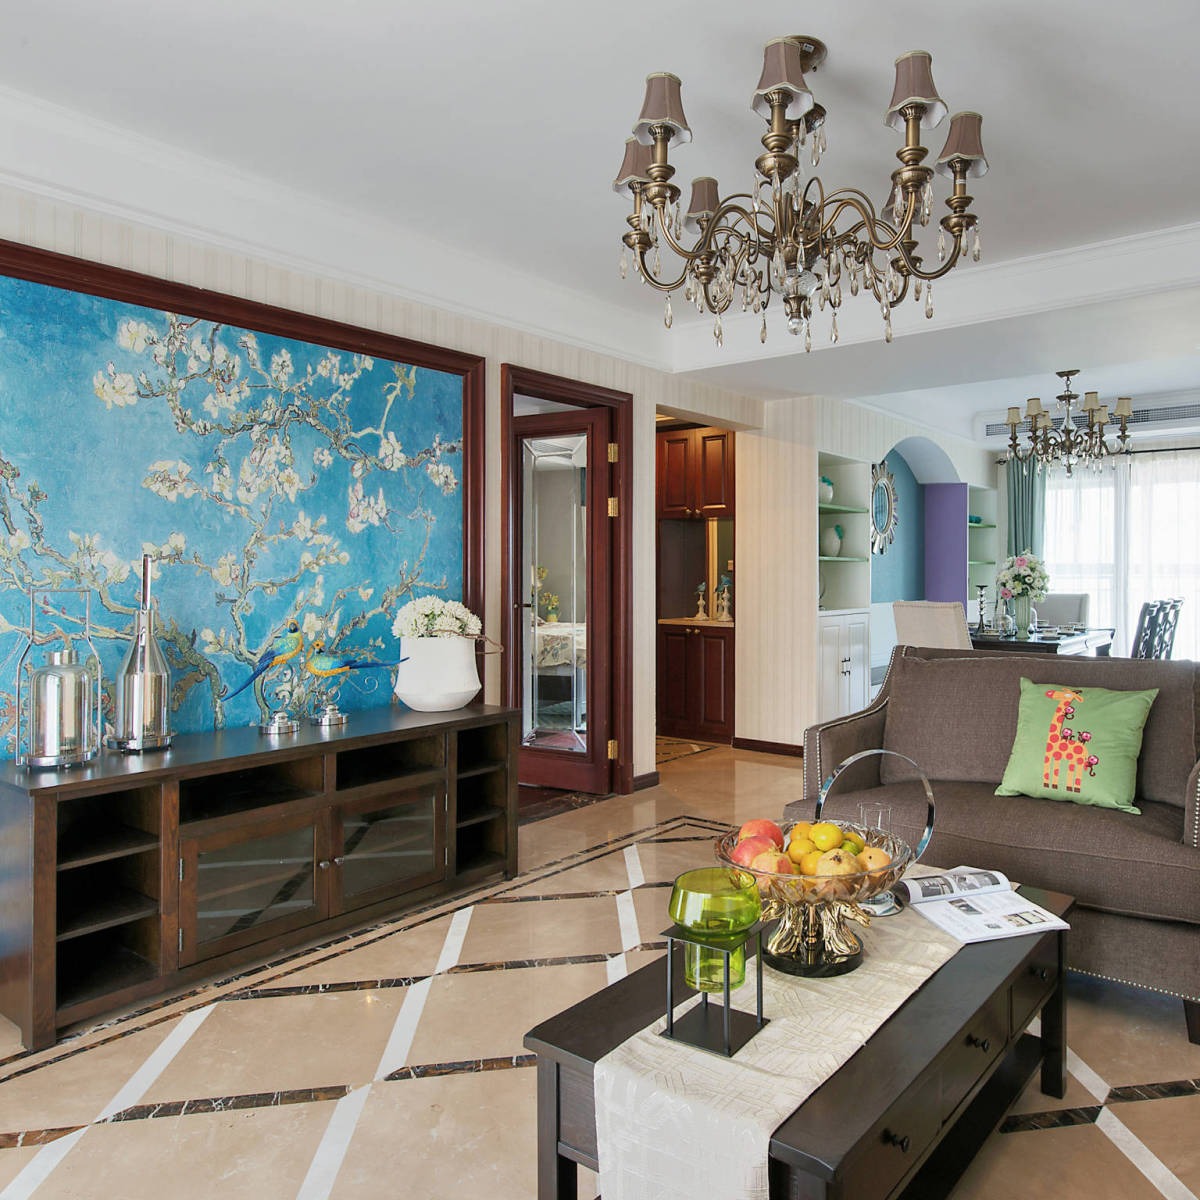 美式 白色 蓝色 壁纸 客厅图片来自tukumajia在167方美式五居的分享